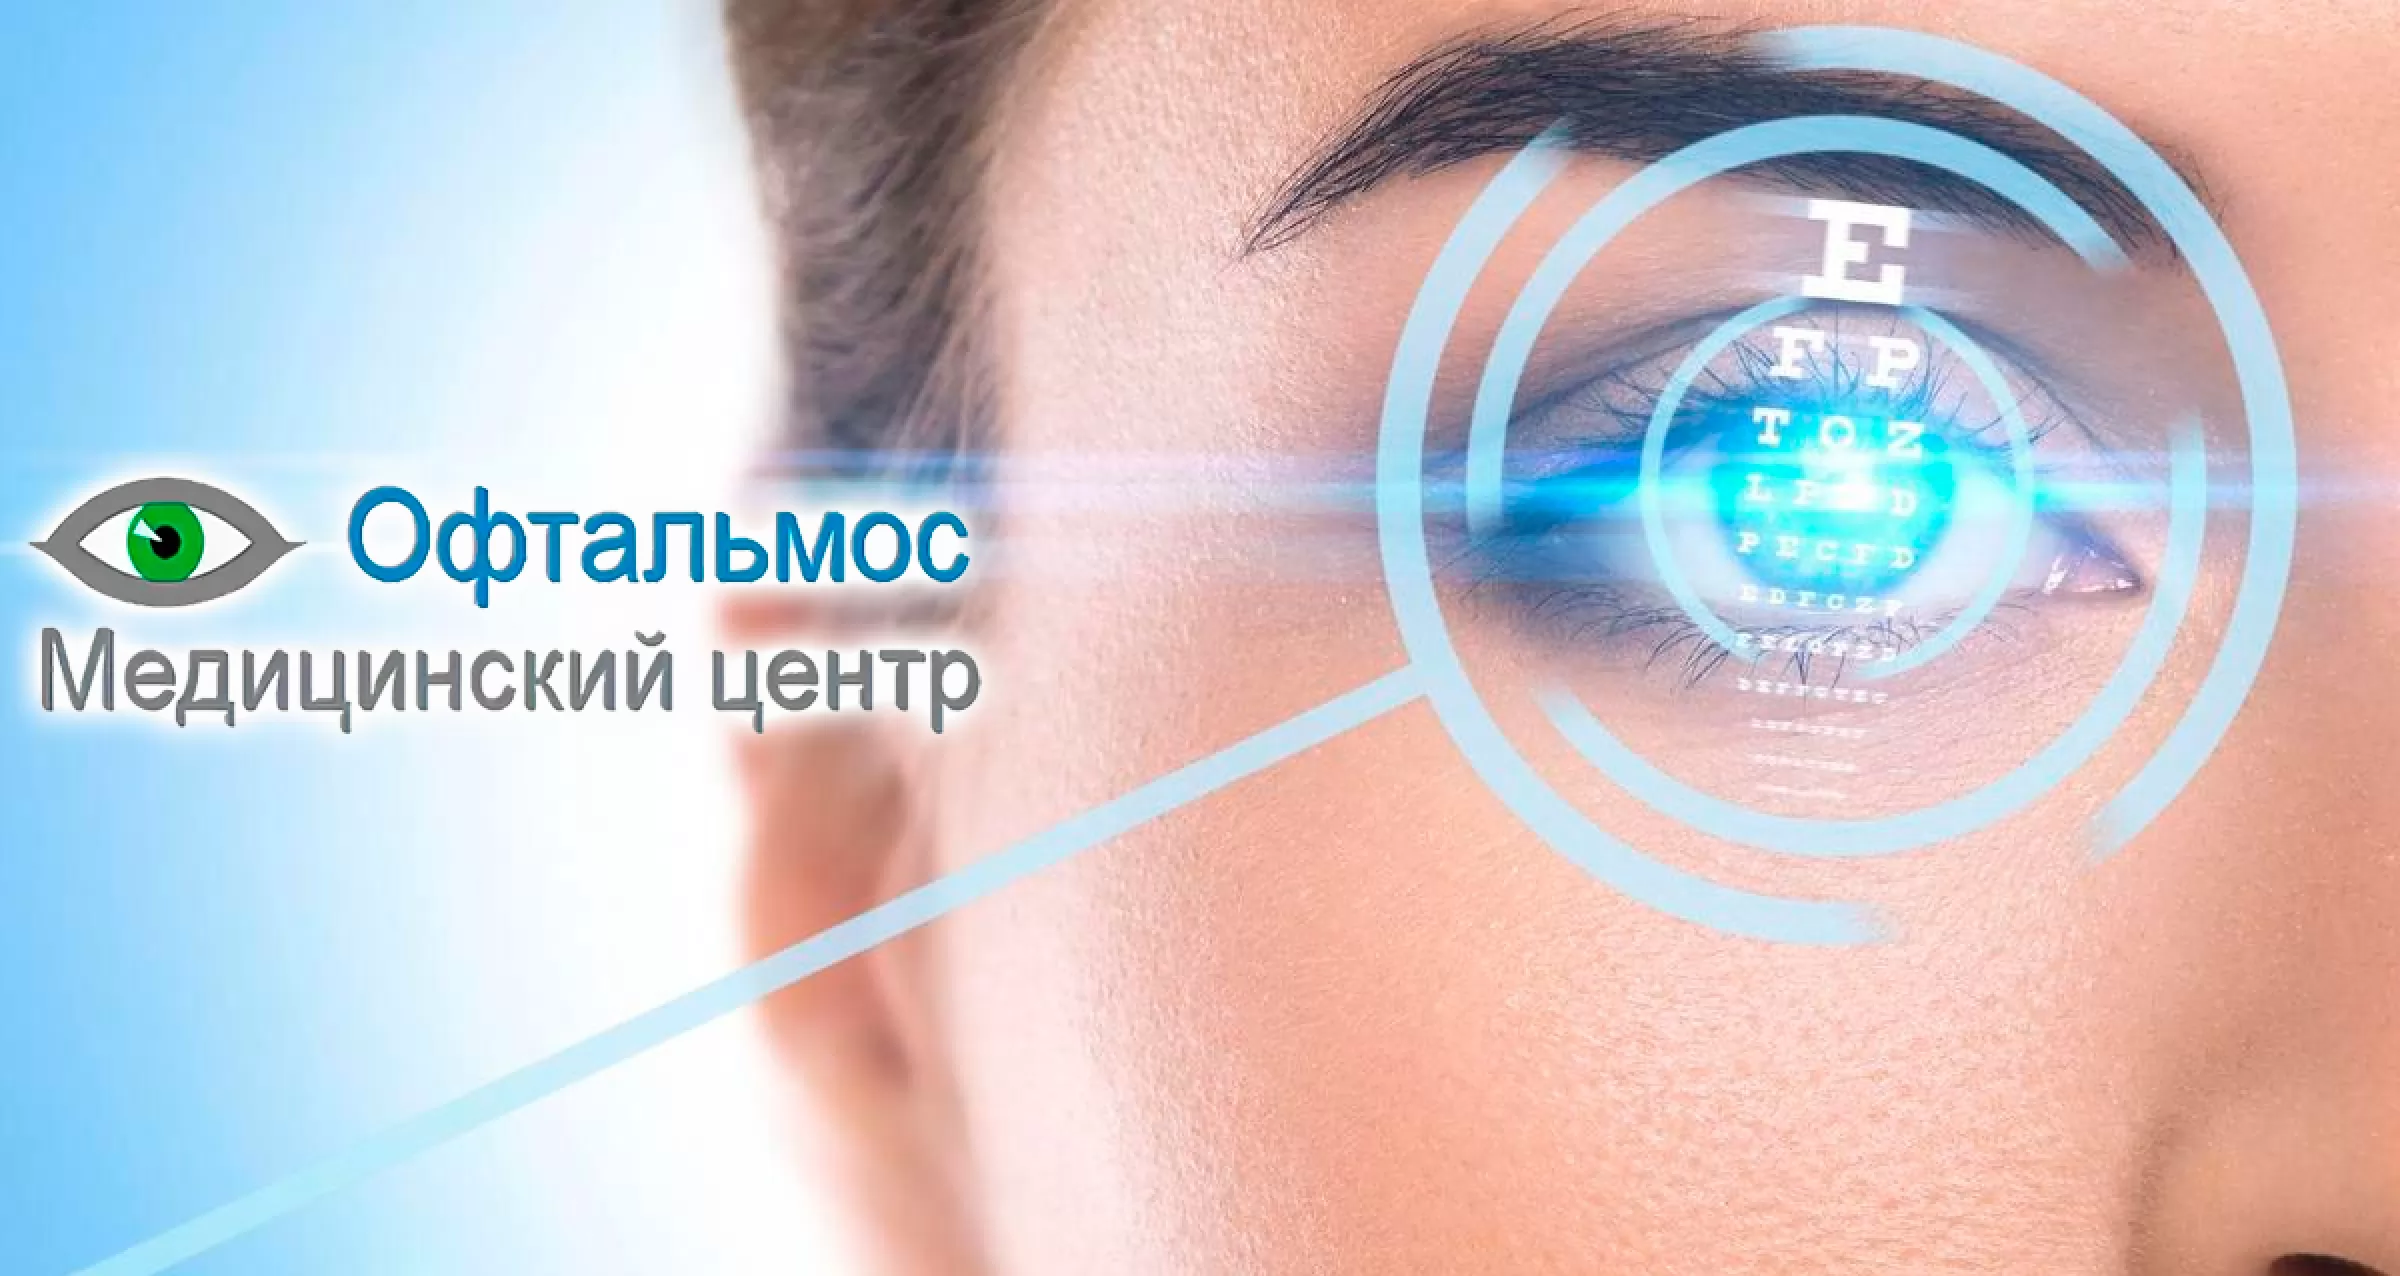 Коррекция зрения цена clinicaspectr ru. Аппарат для лазерной коррекции зрения. Оптика глаза.